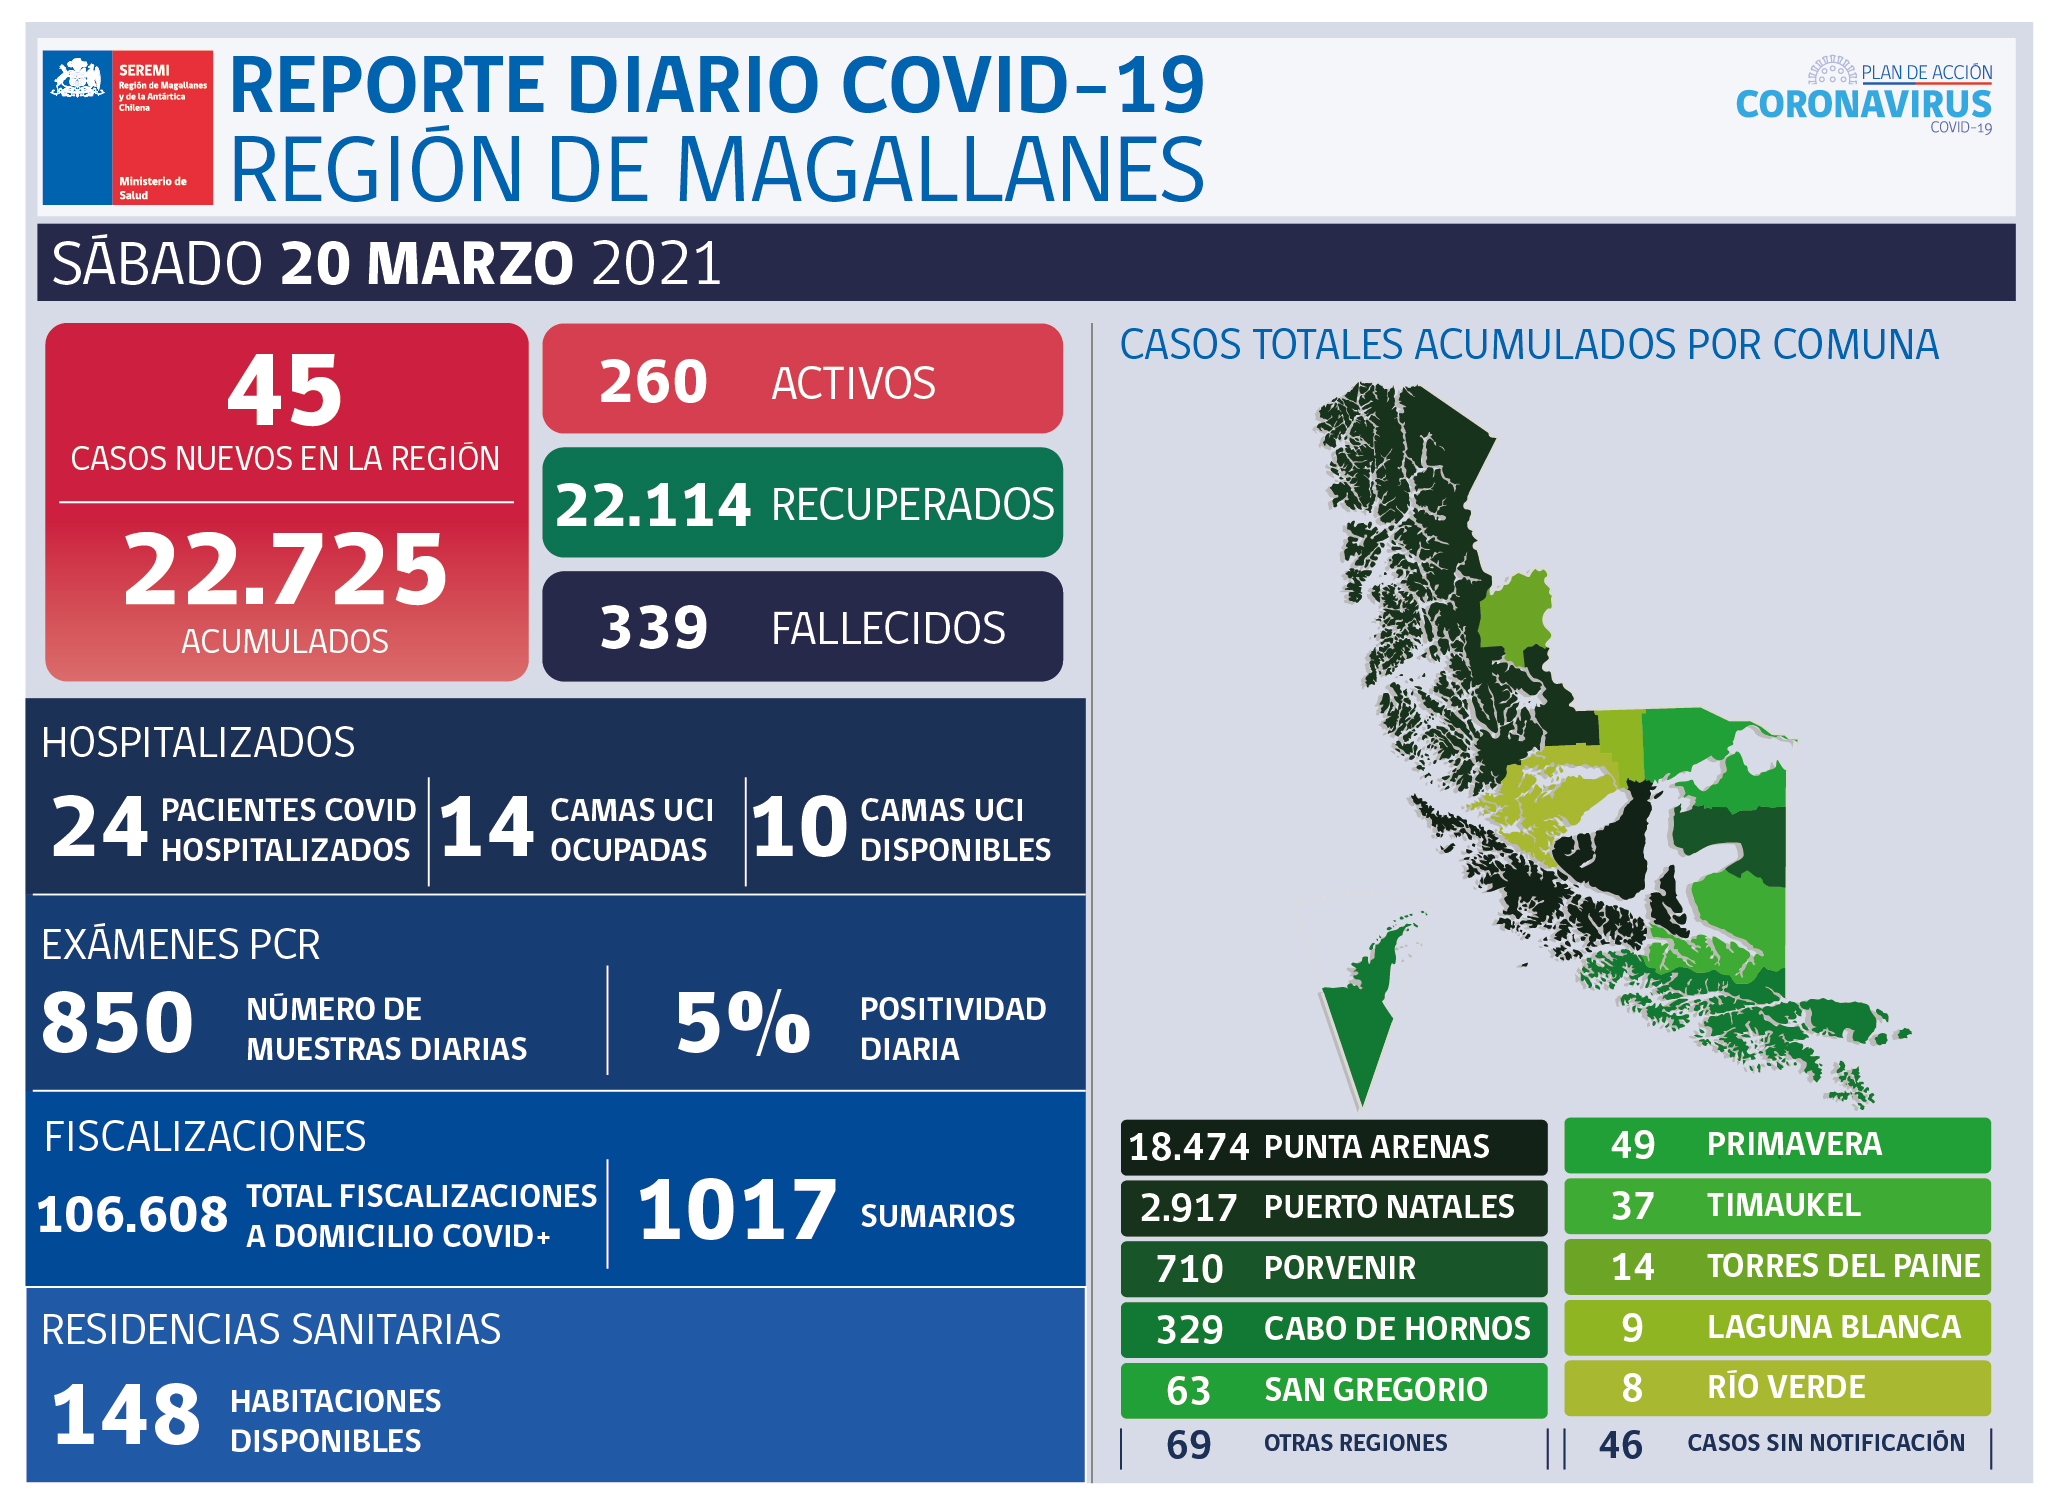 45 nuevos casos de covid-19 en Magallanes en las recientes 24 horas